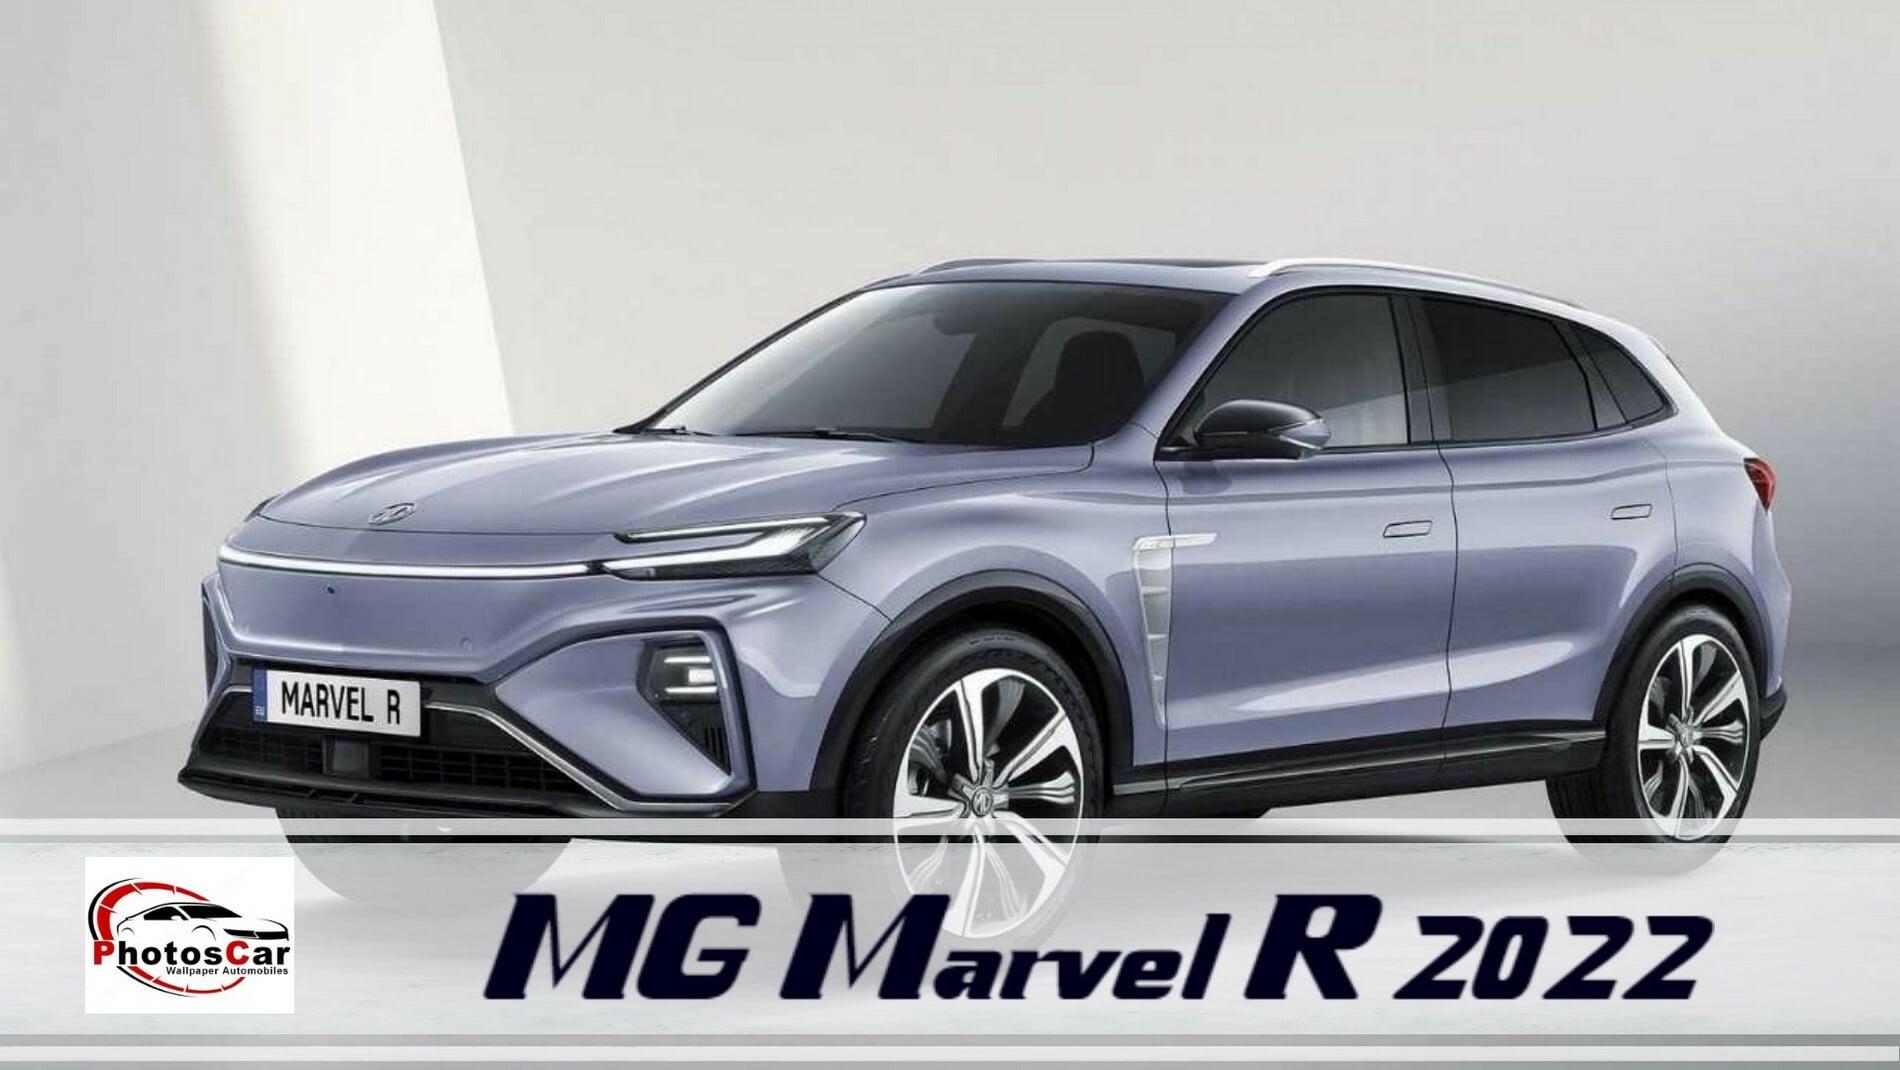 MG Marvel R 2022